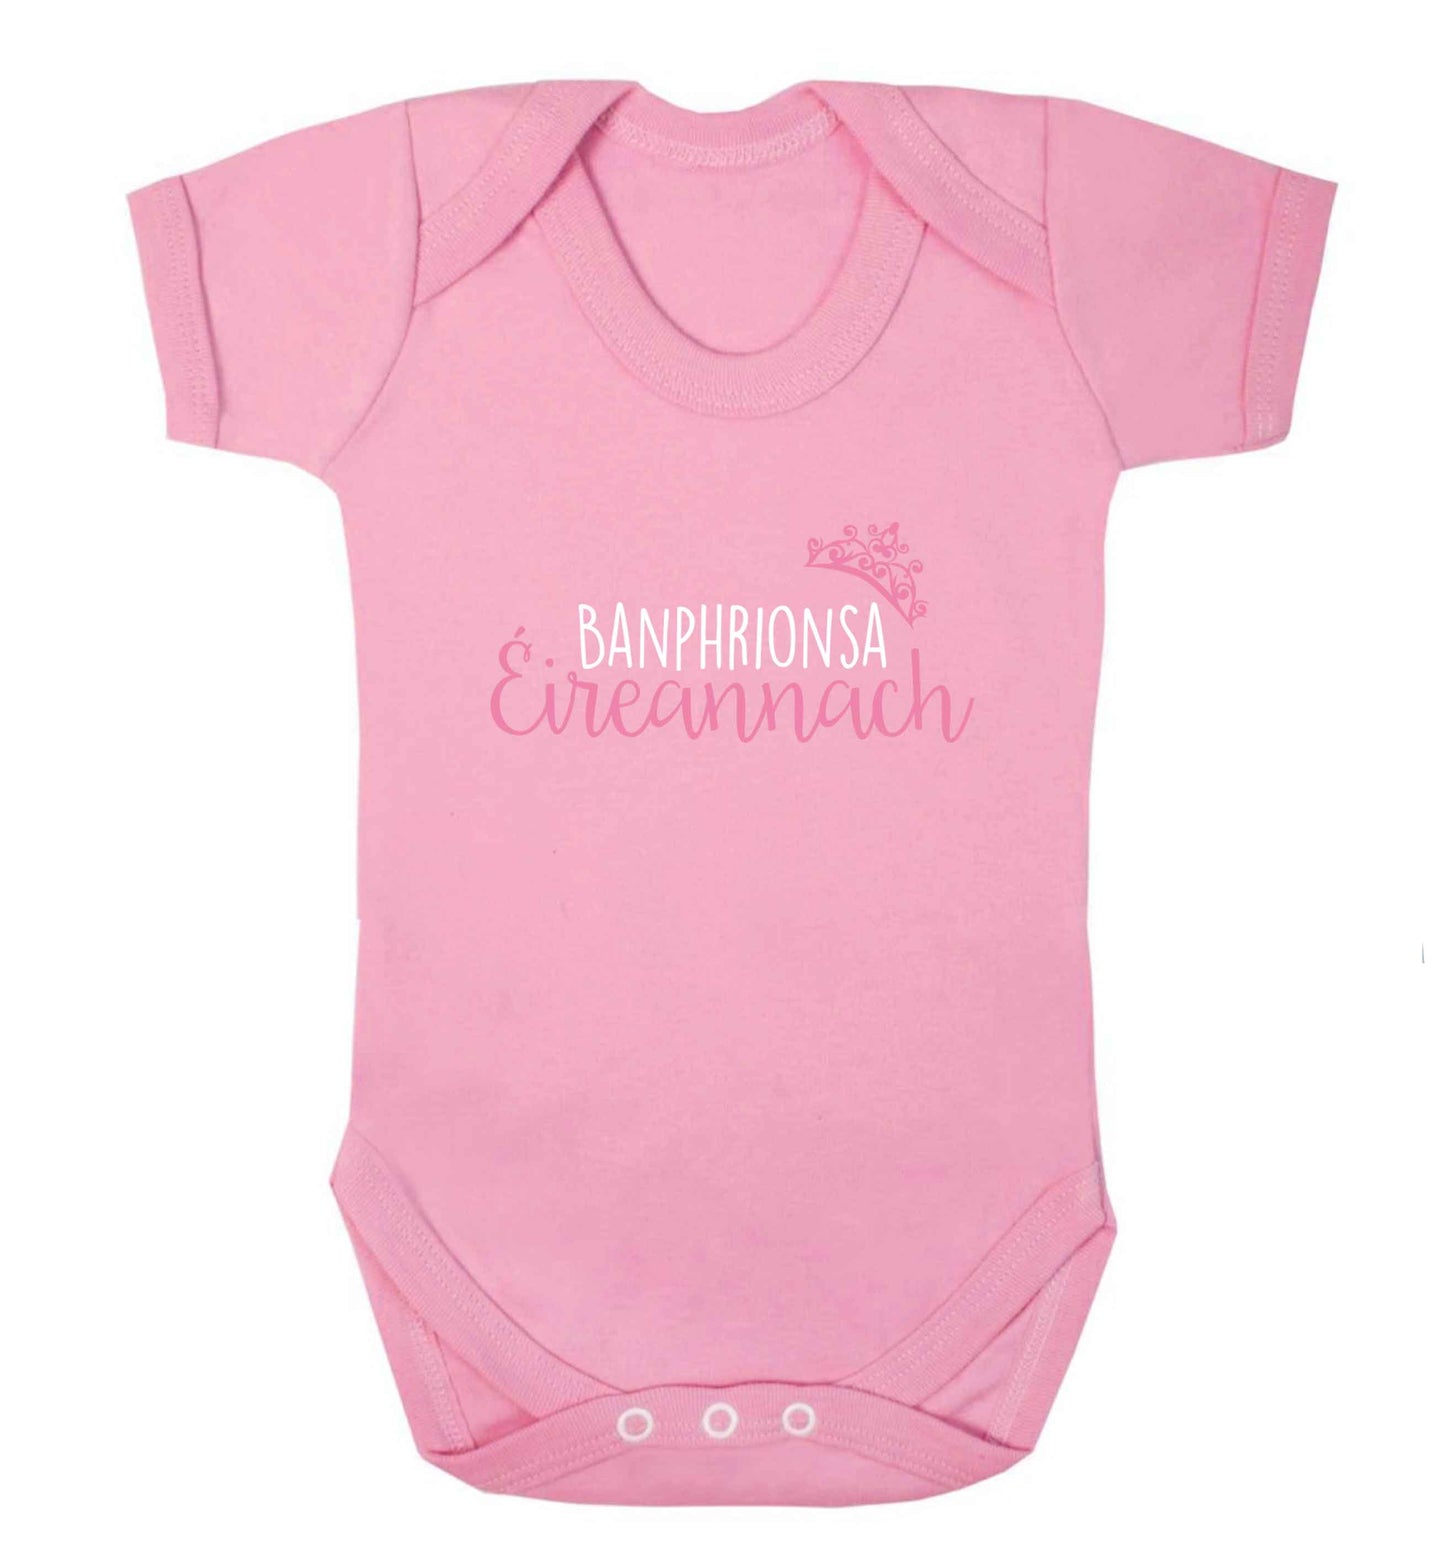 Banphrionsa eireannach baby vest pale pink 18-24 months